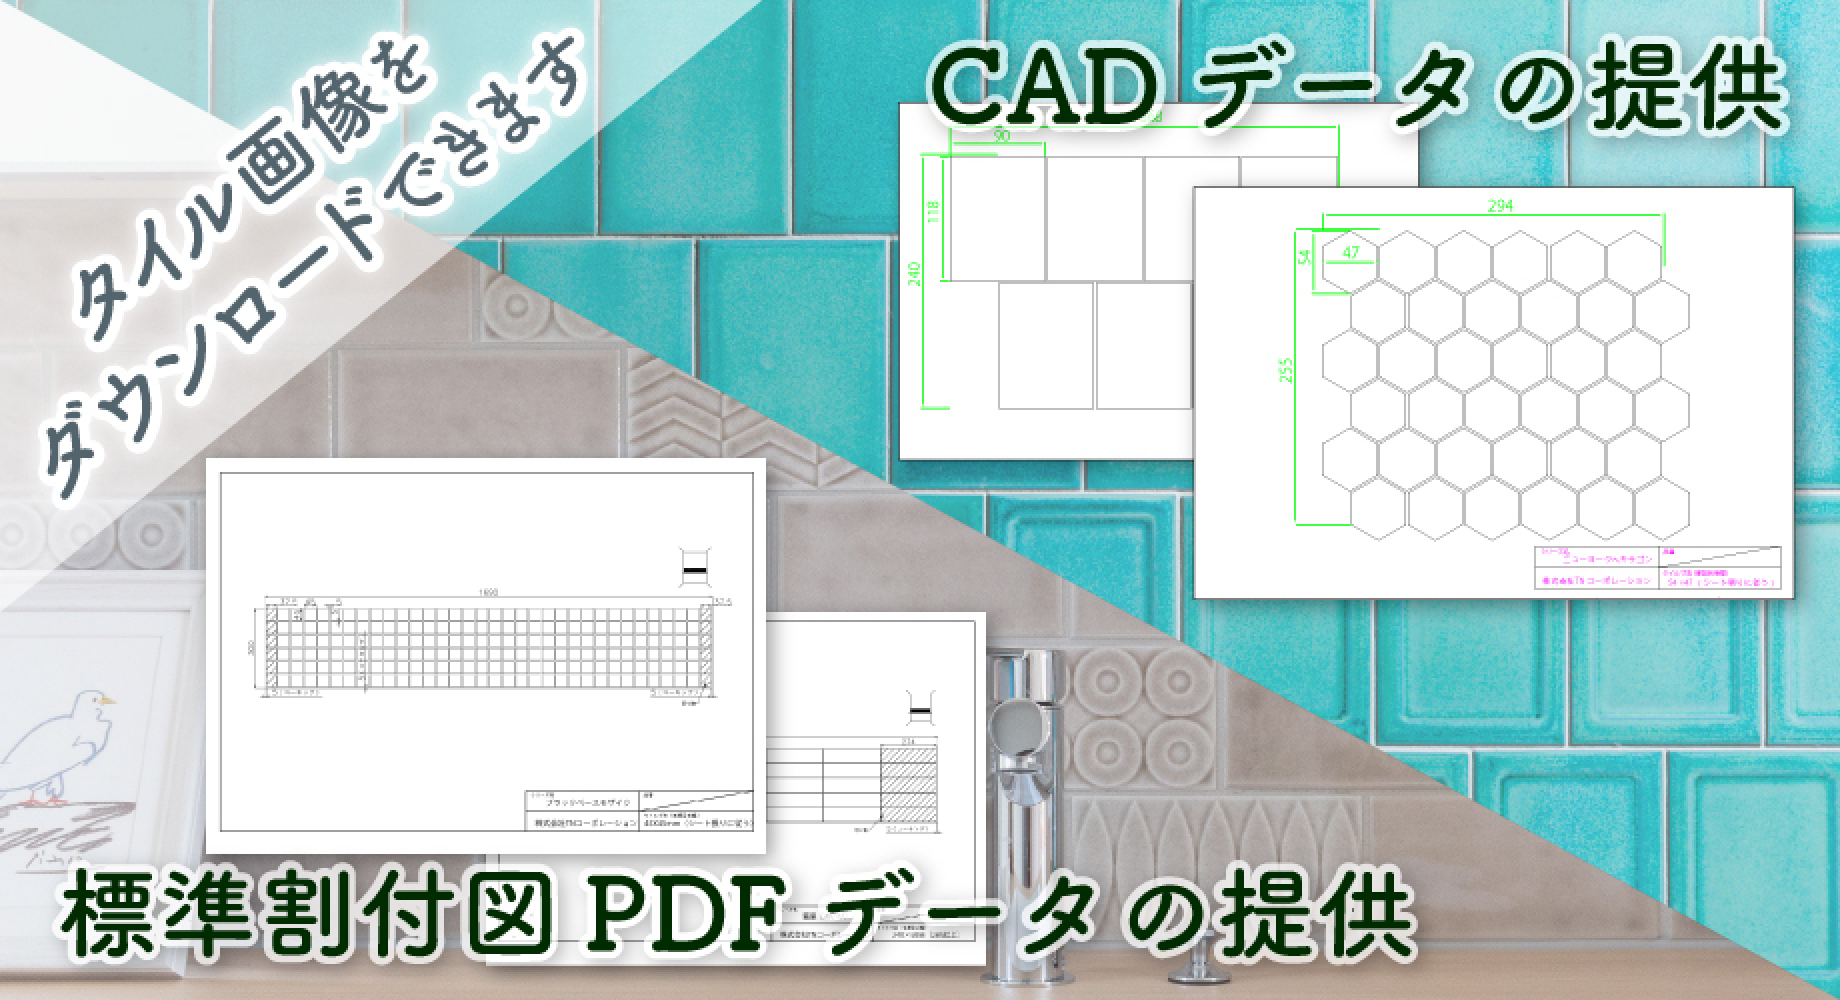 タイル画像をダウンロードできます CADデータの提供 標準割付図PDFデータの提供